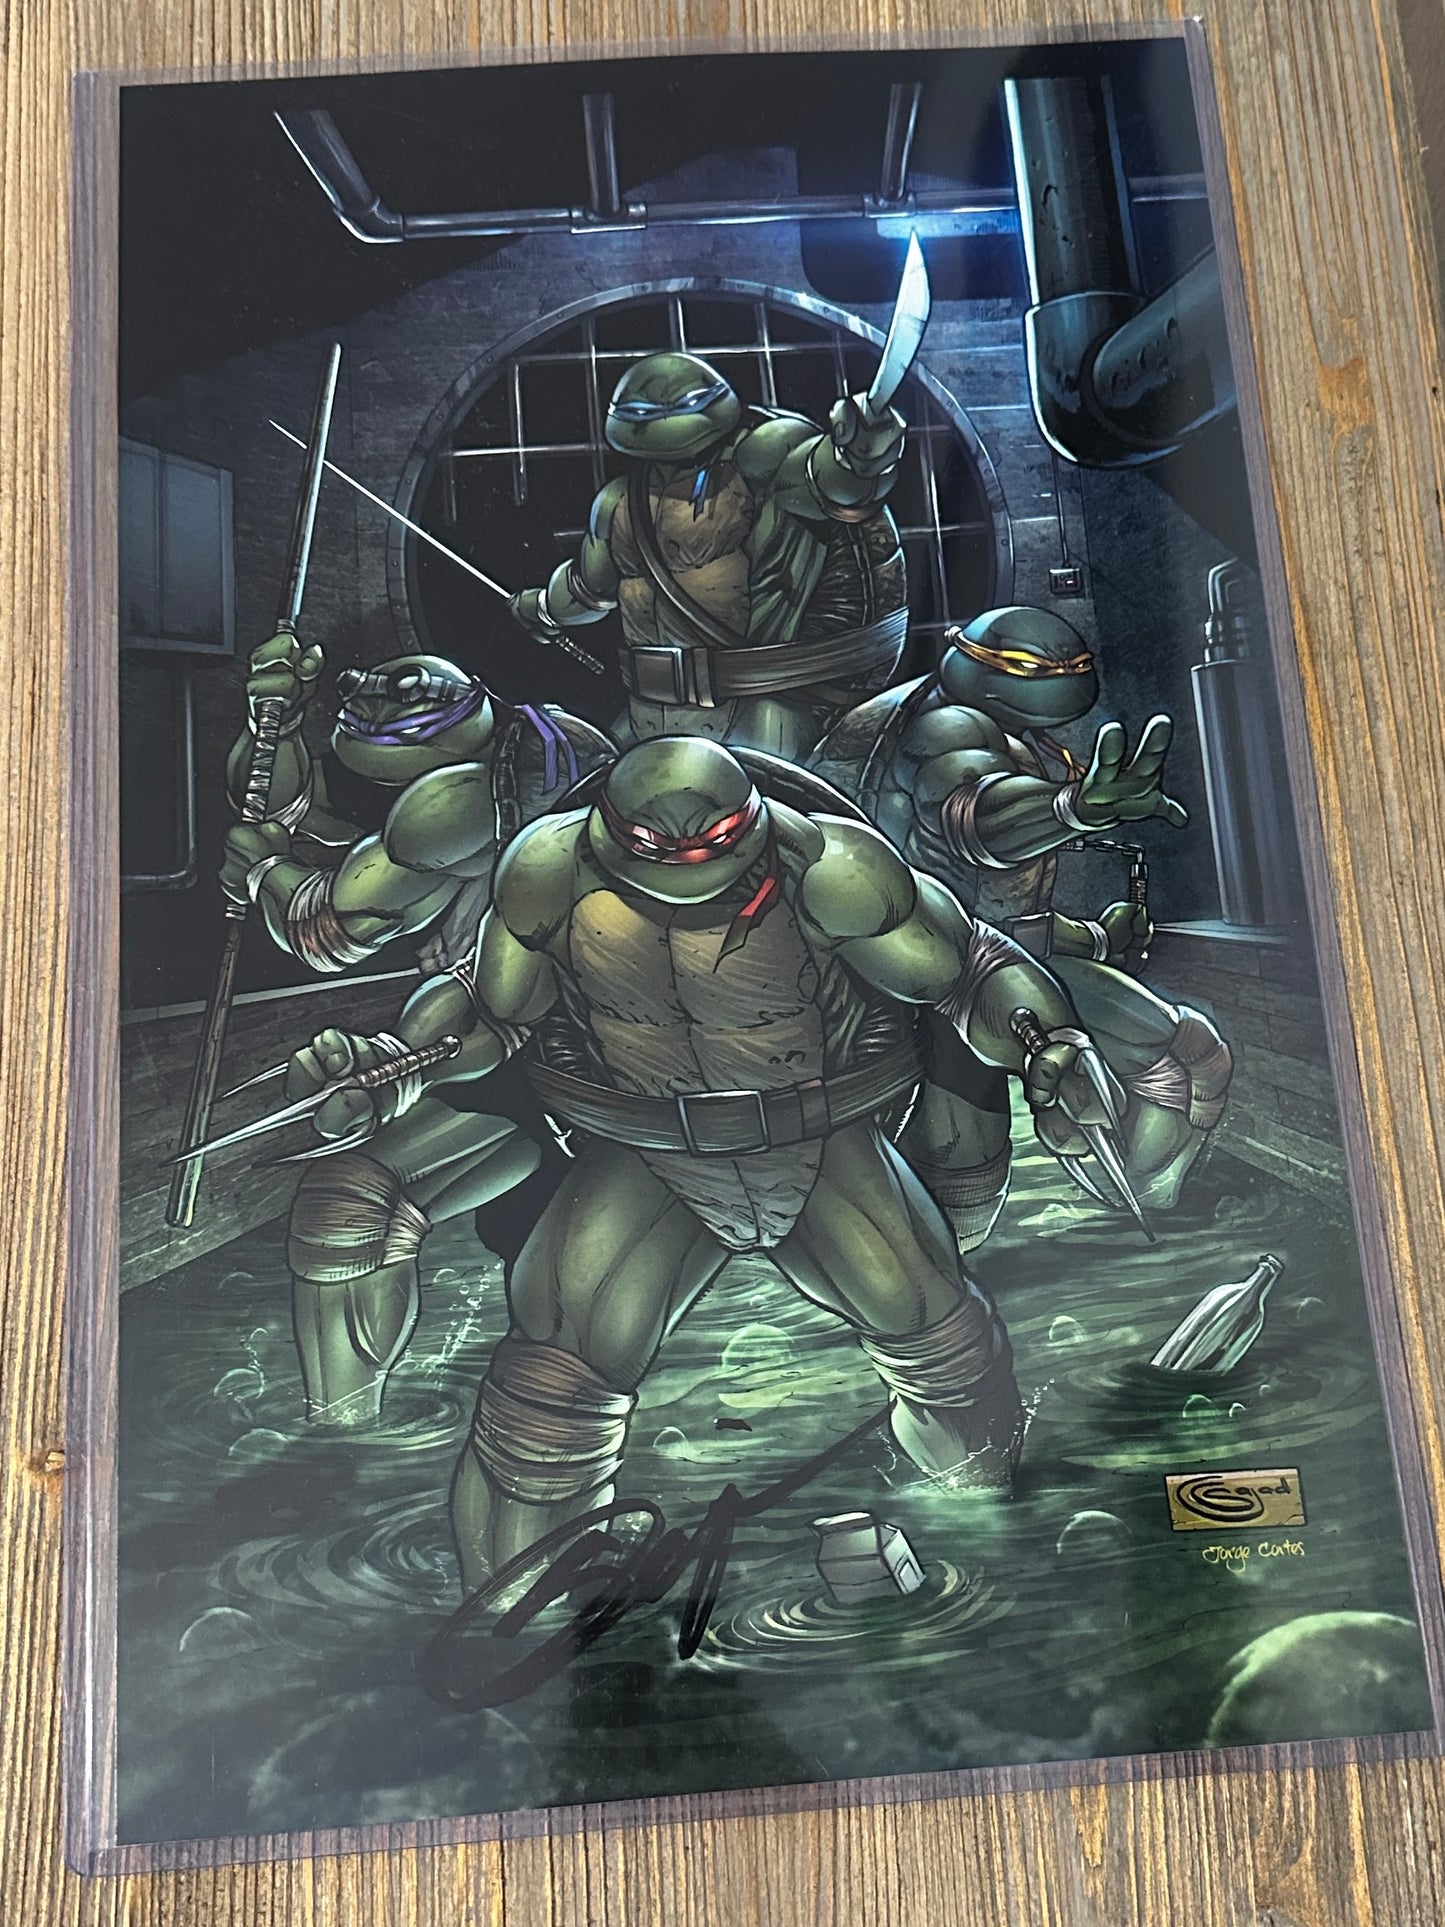 11x17 signed print Teenage mutant ninja turtles